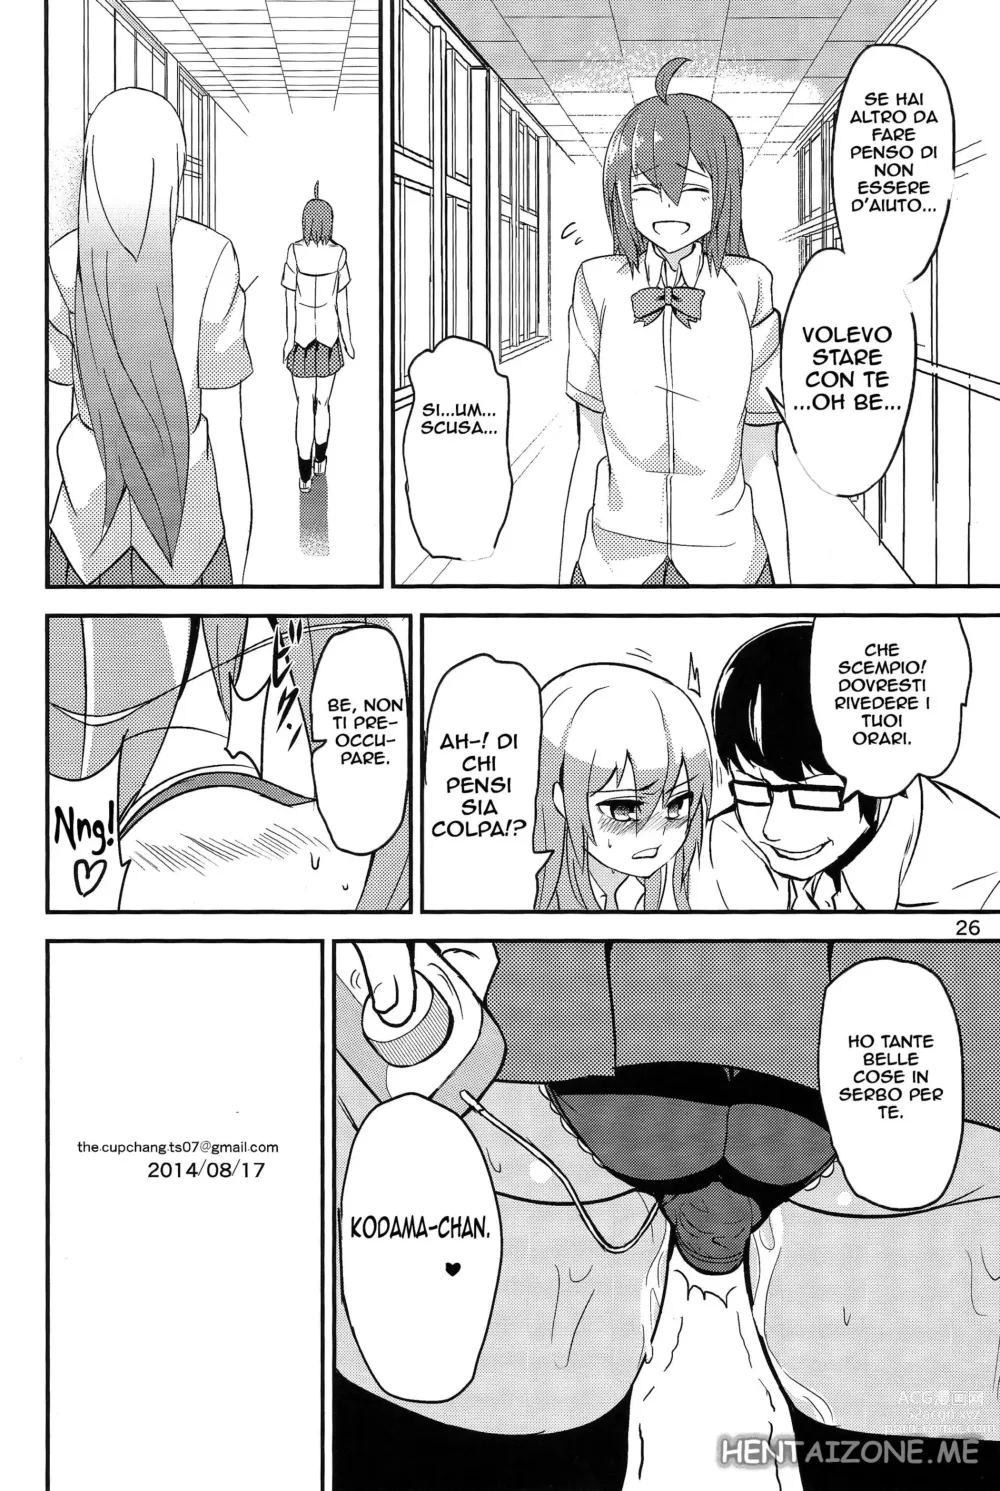 Page 25 of doujinshi Come ho Perso la Verginità